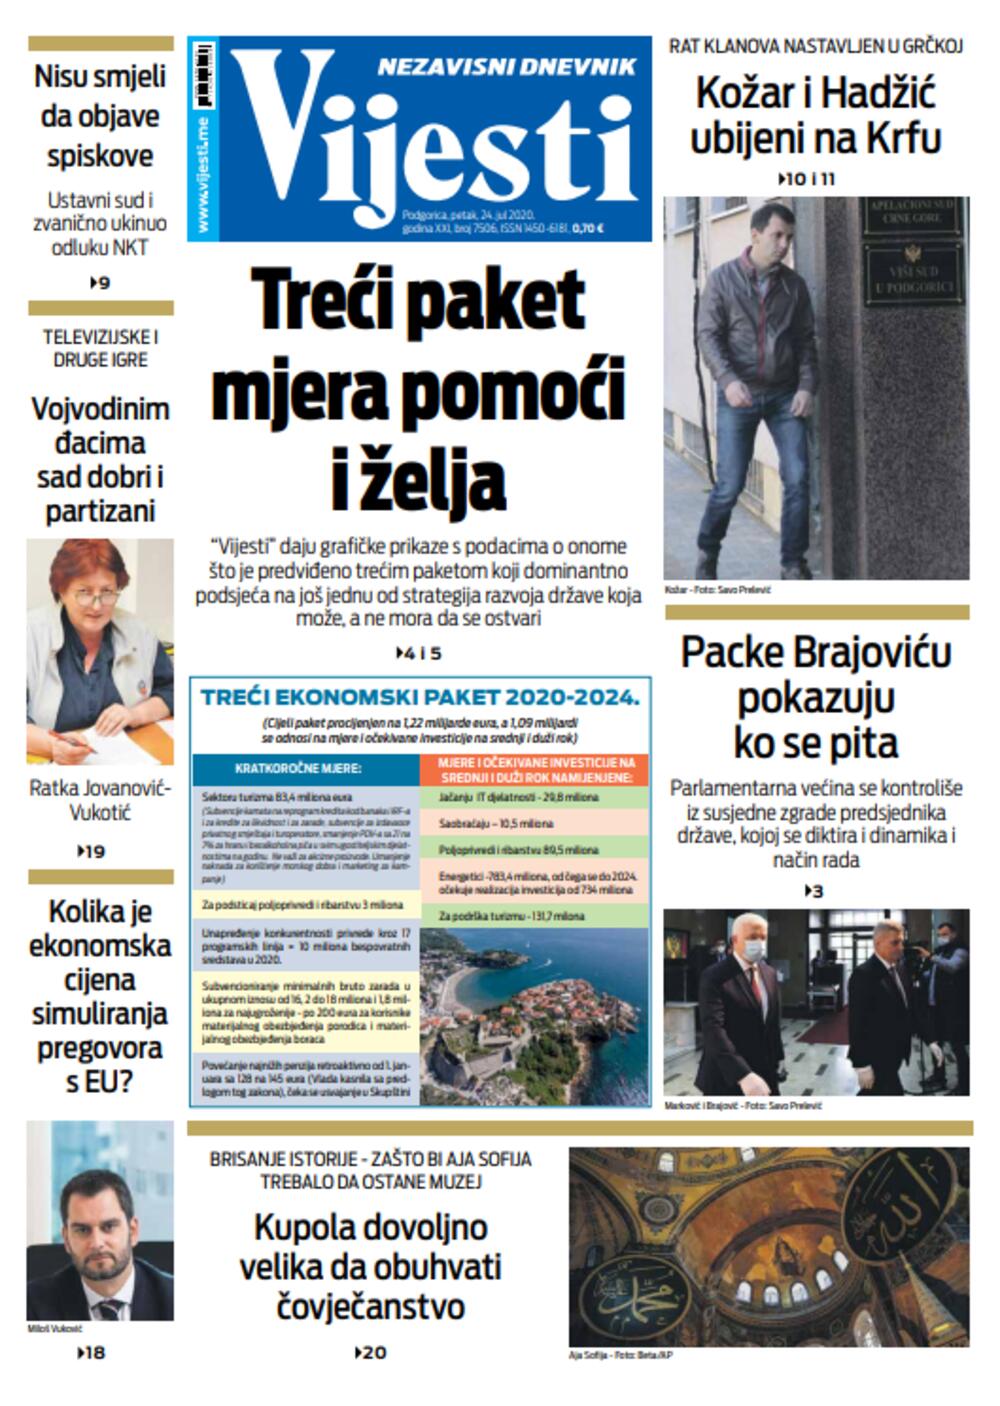 Naslovna strana "Vijesti" za 24. jul, Foto: Vijesti